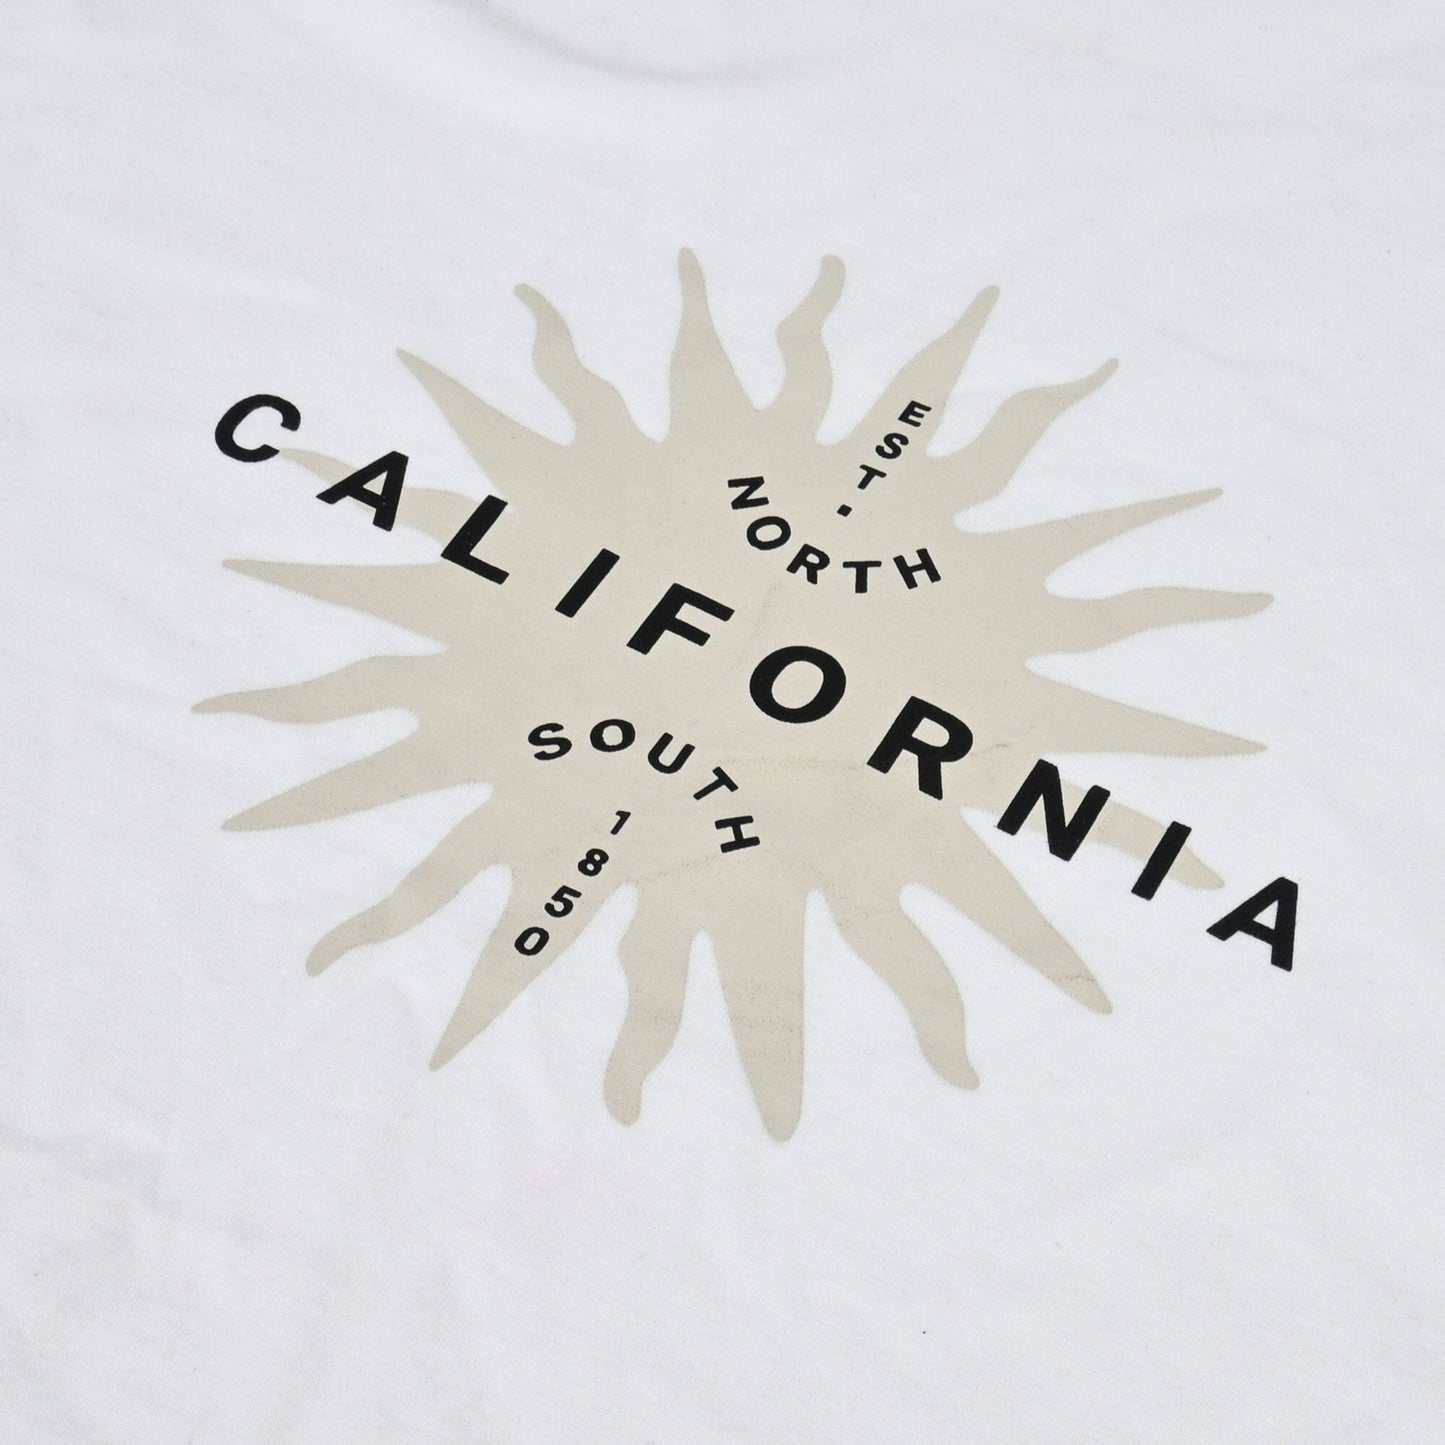 Polo Republica Men's East North California Printed Crew Neck Tee Shirt Men's Tee Shirt Polo Republica 